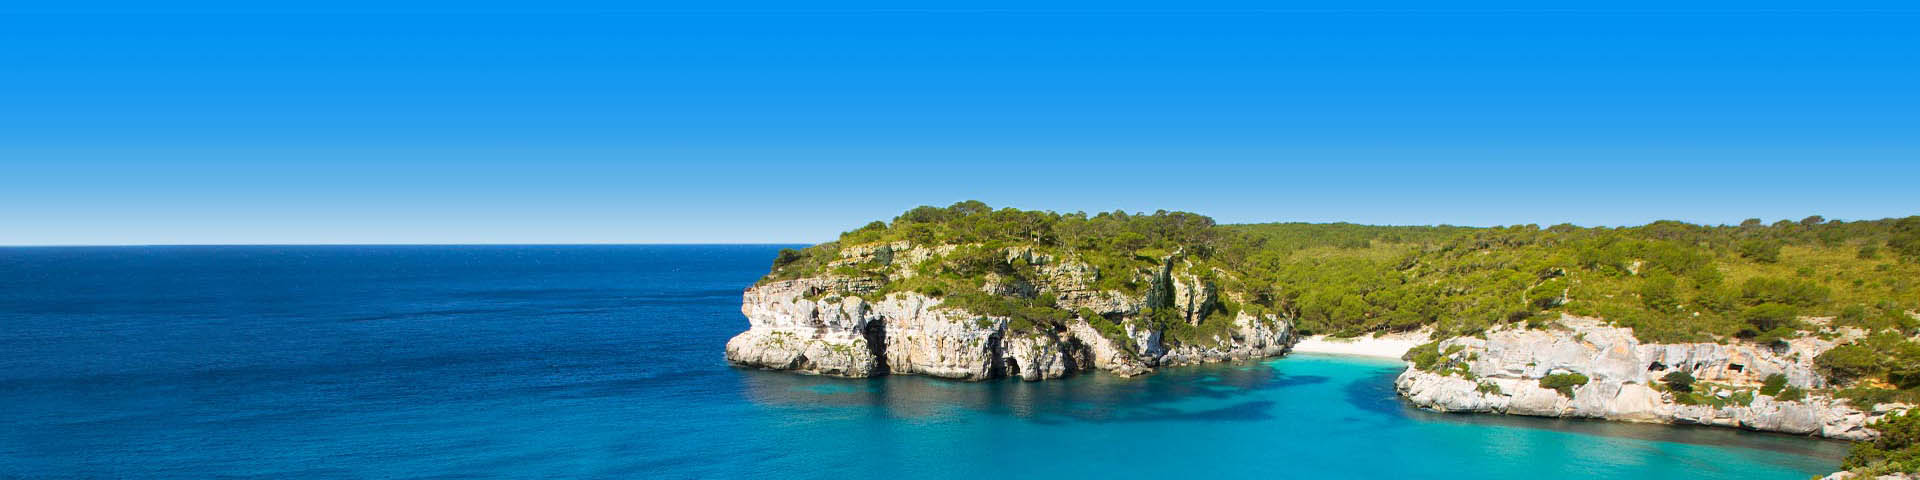 Helderblauwe zee grenzend aan rotsen bij het Spaanse eiland Menorca